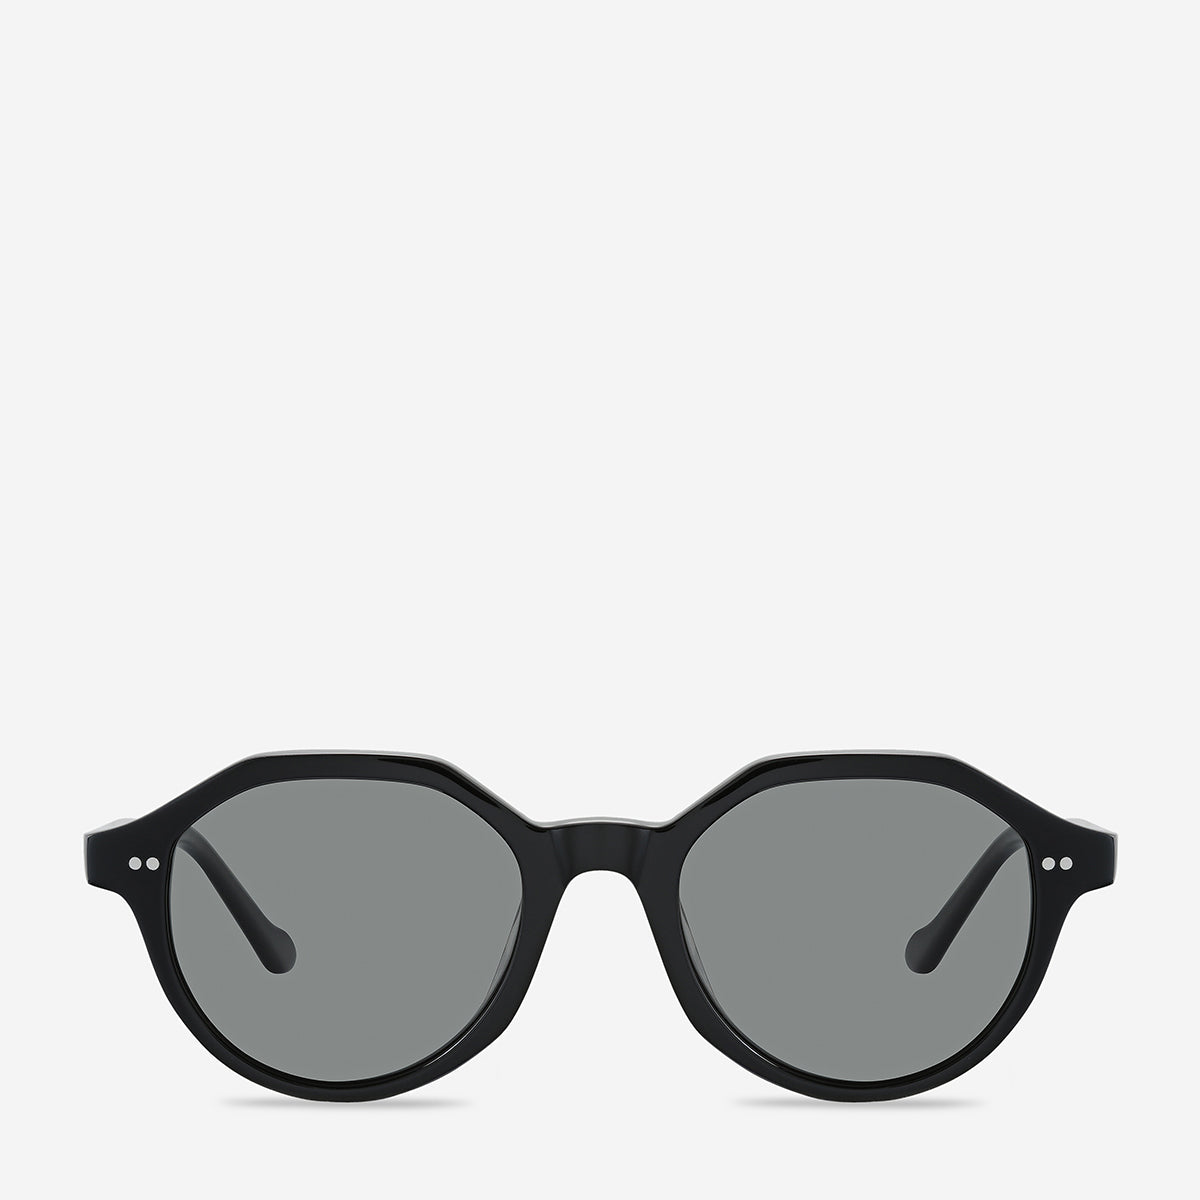 Apathy - Unisex Polarised Sunglasses